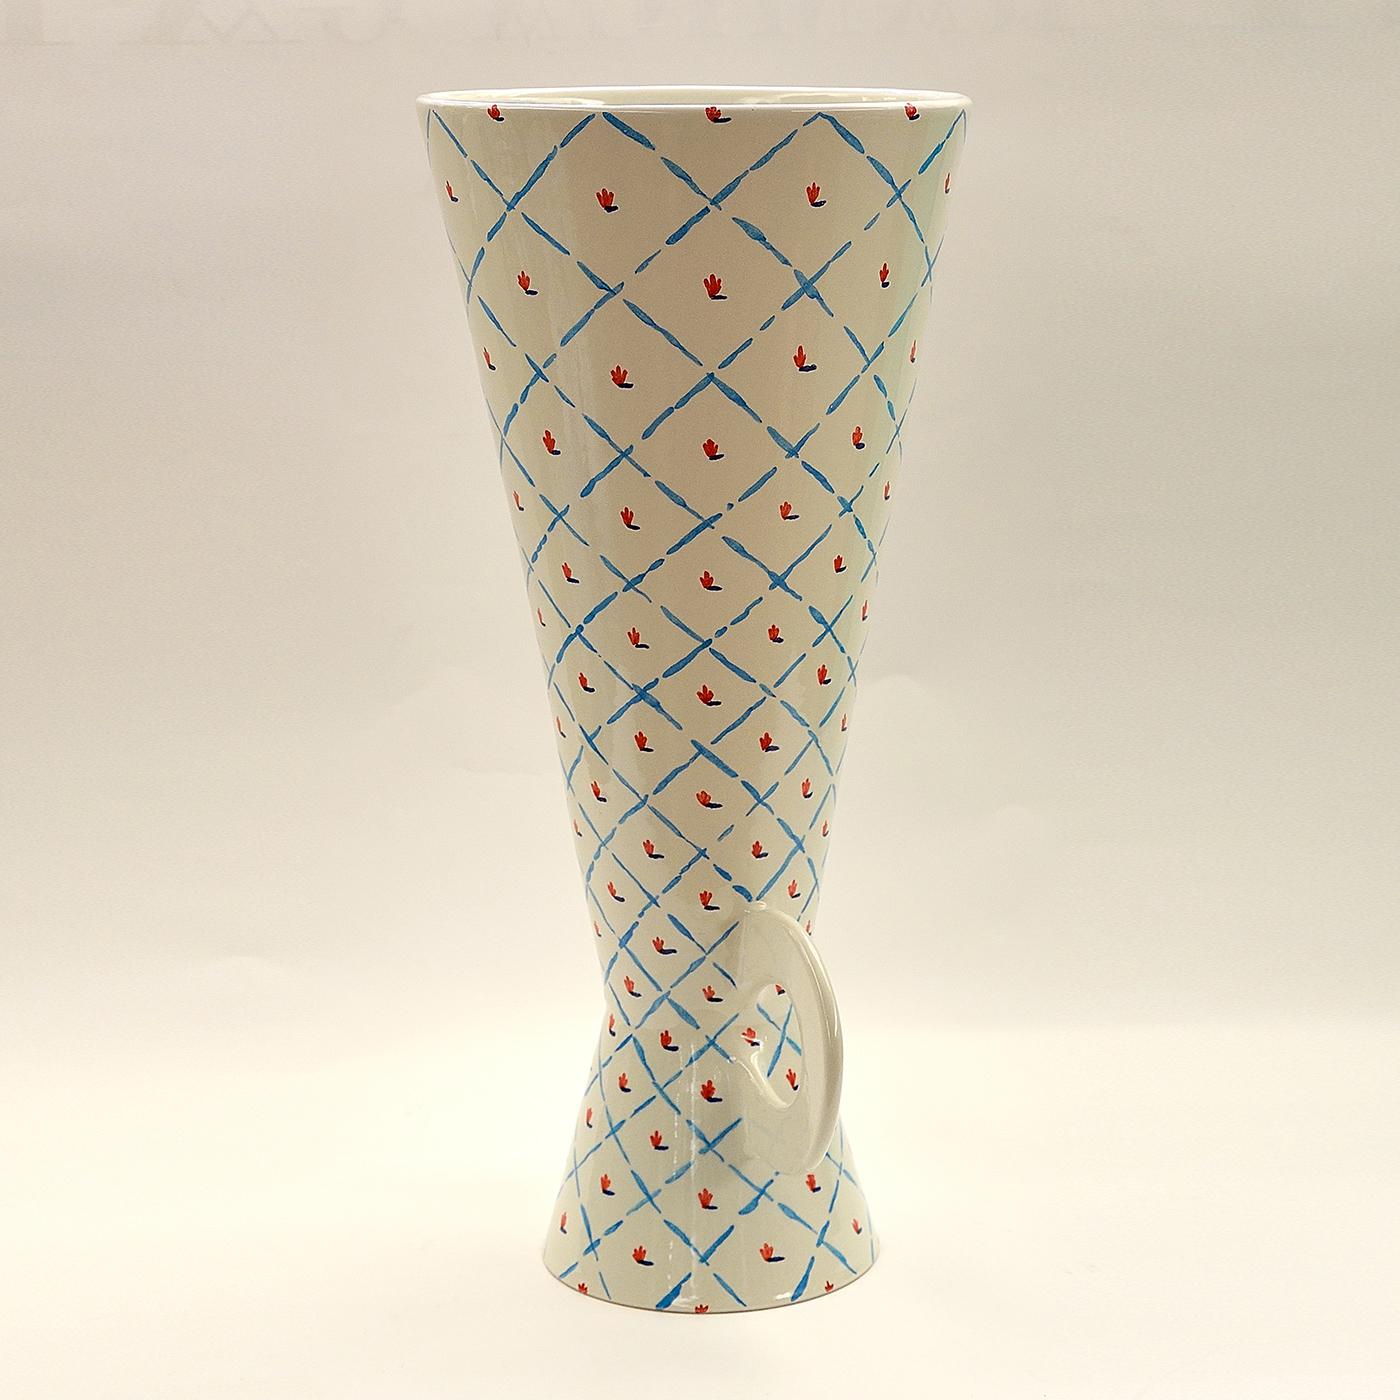 Ce vase en céramique a été fabriqué sur un tour et émaillé en faïence. Les lignes géométriques et le motif floral ont été peints à la main en bleu et rouge sur une base blanche étincelante. Cette pièce fait partie d'une série limitée de 6 pièces